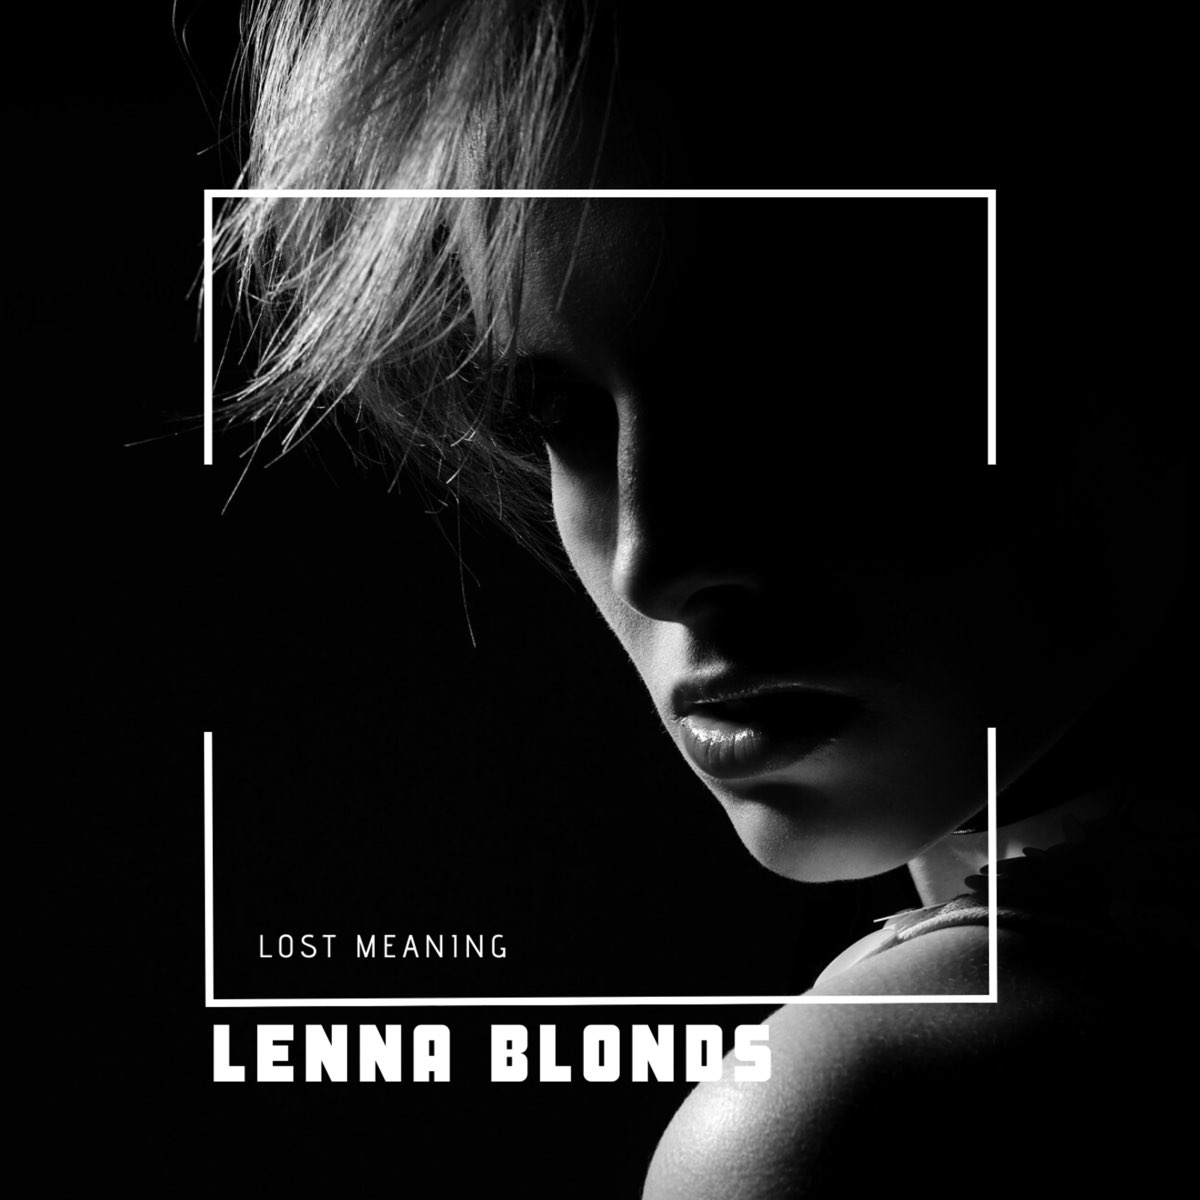 Blonde слушать песни. Альбом блонд. Дид блонд слушать. Альбом блонд слушать. Песня Lenna.